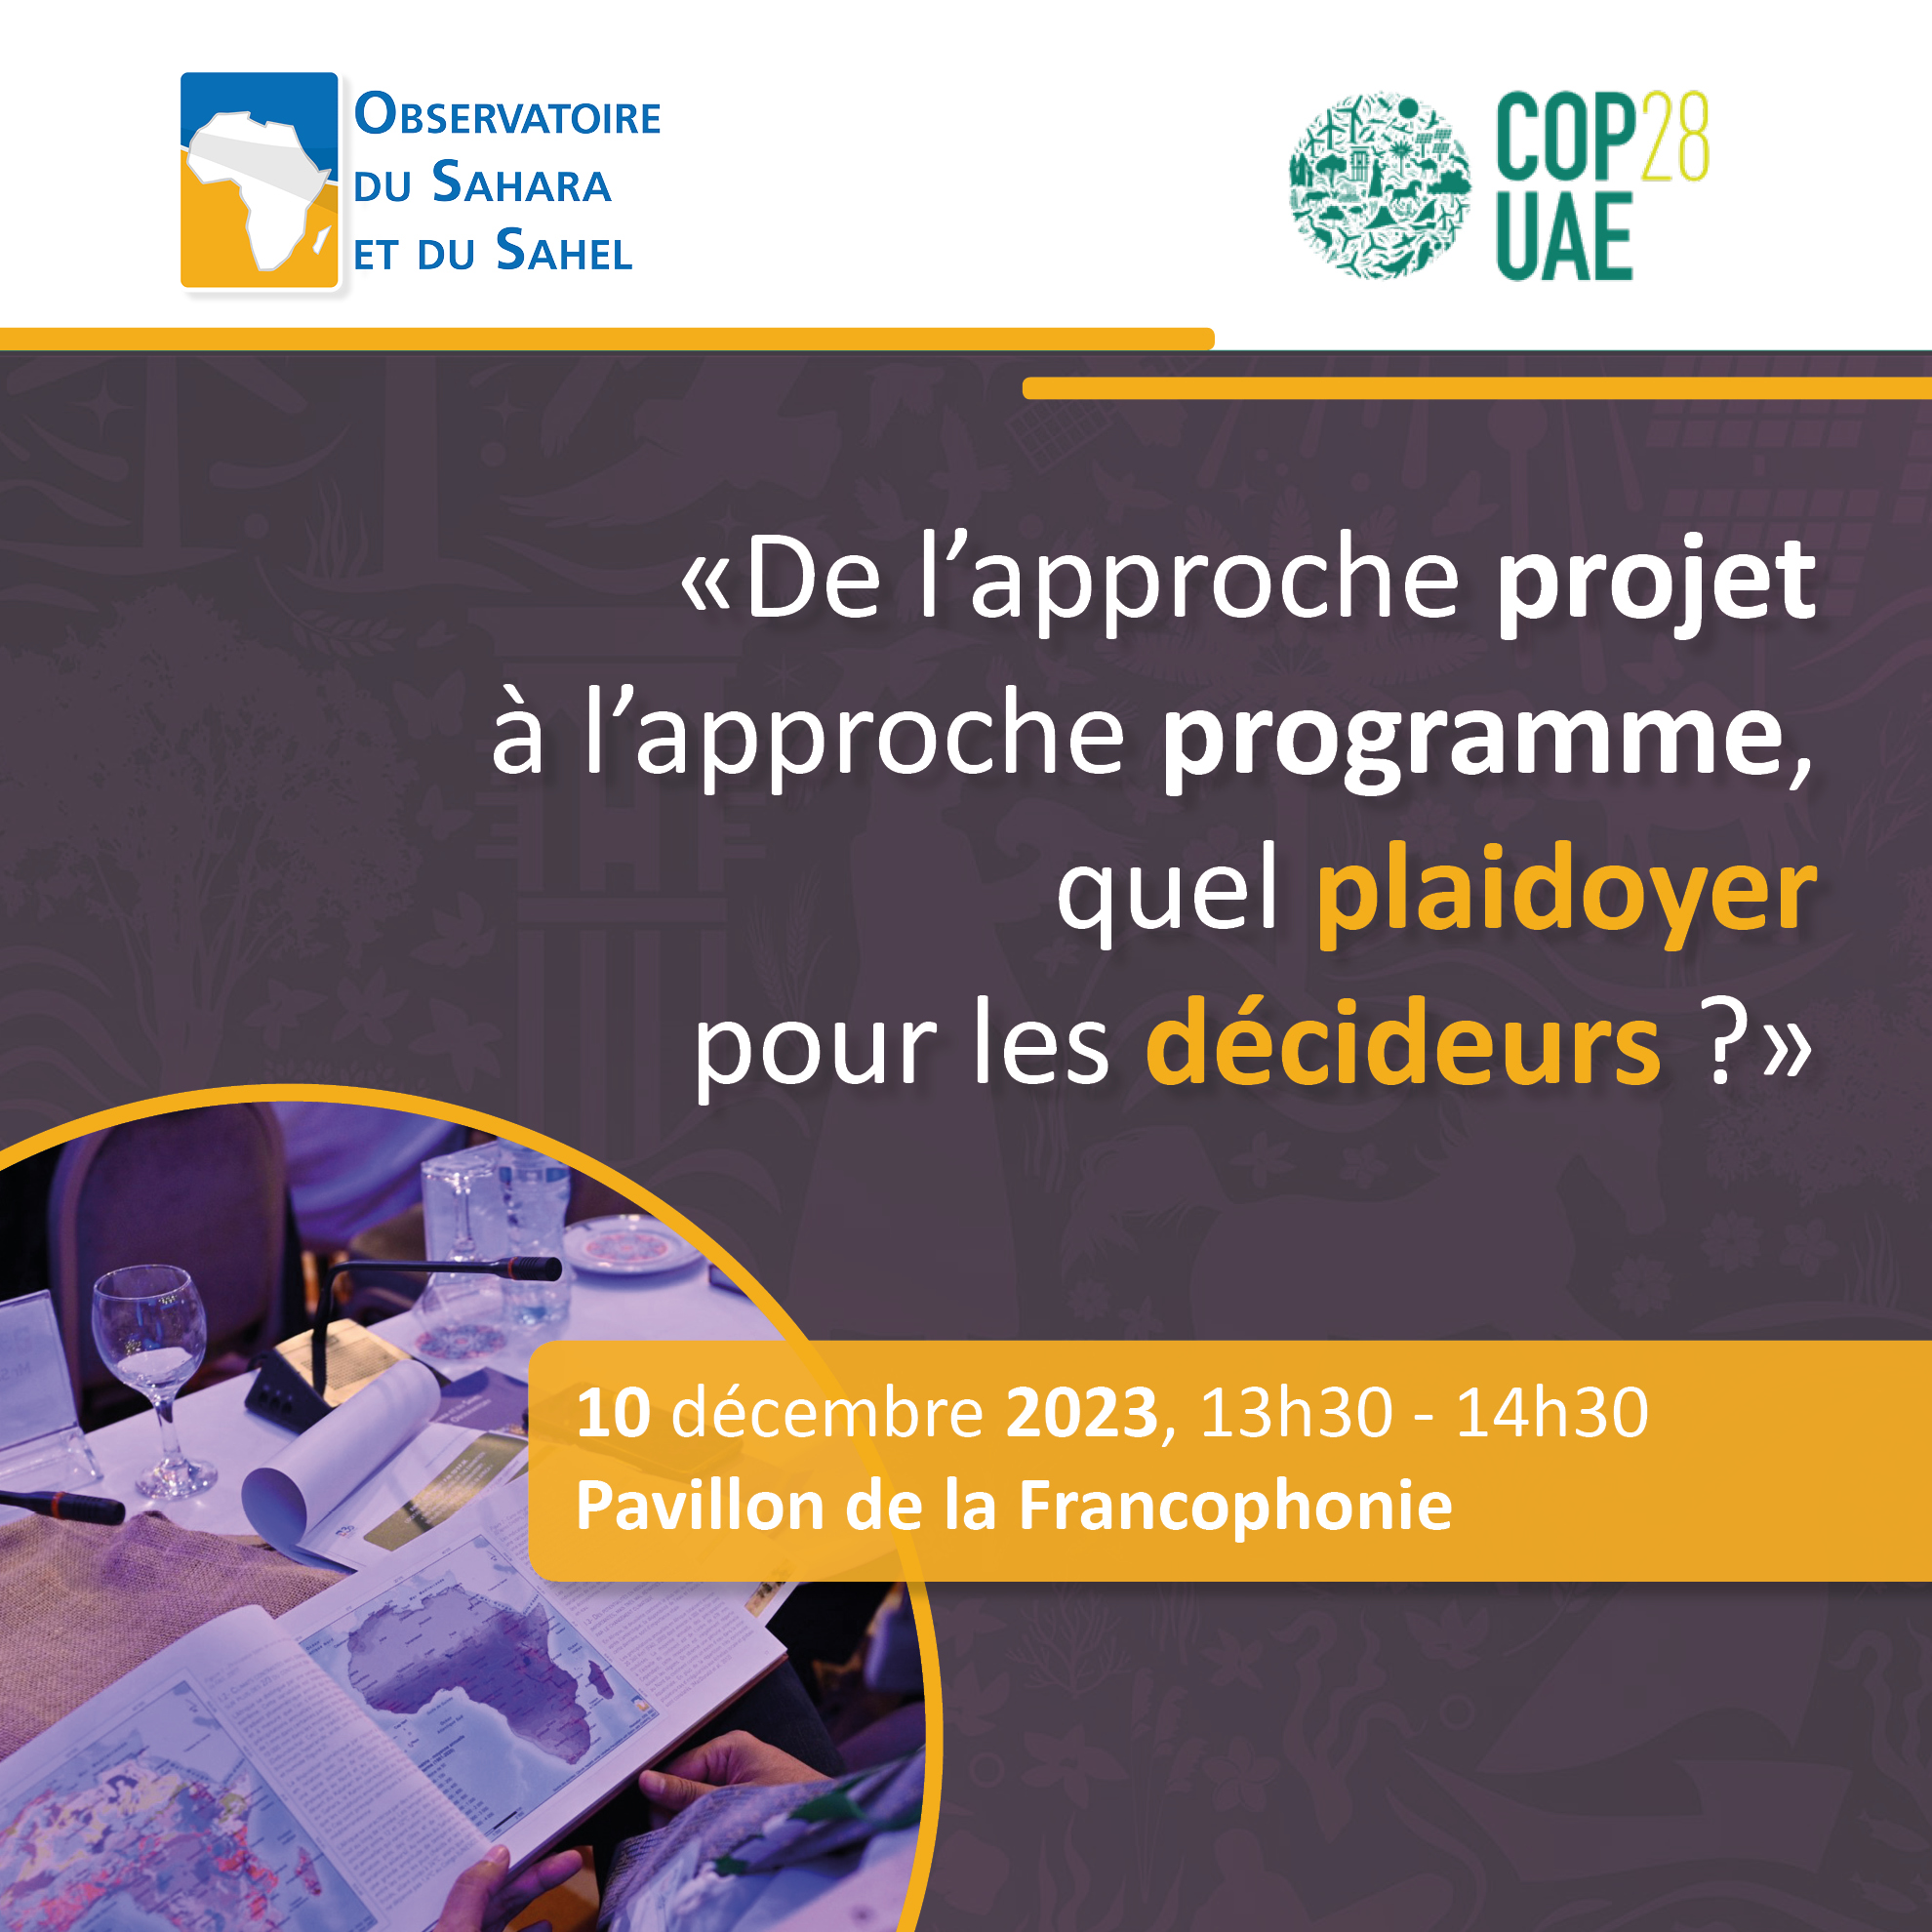  COP28UAE  - 10 décembre 2023, de 13h30 à 14h30 au Pavillon de la Francophonie - « De l’approche projet à l’approche programme, quel plaidoyer pour les décideurs ? » 